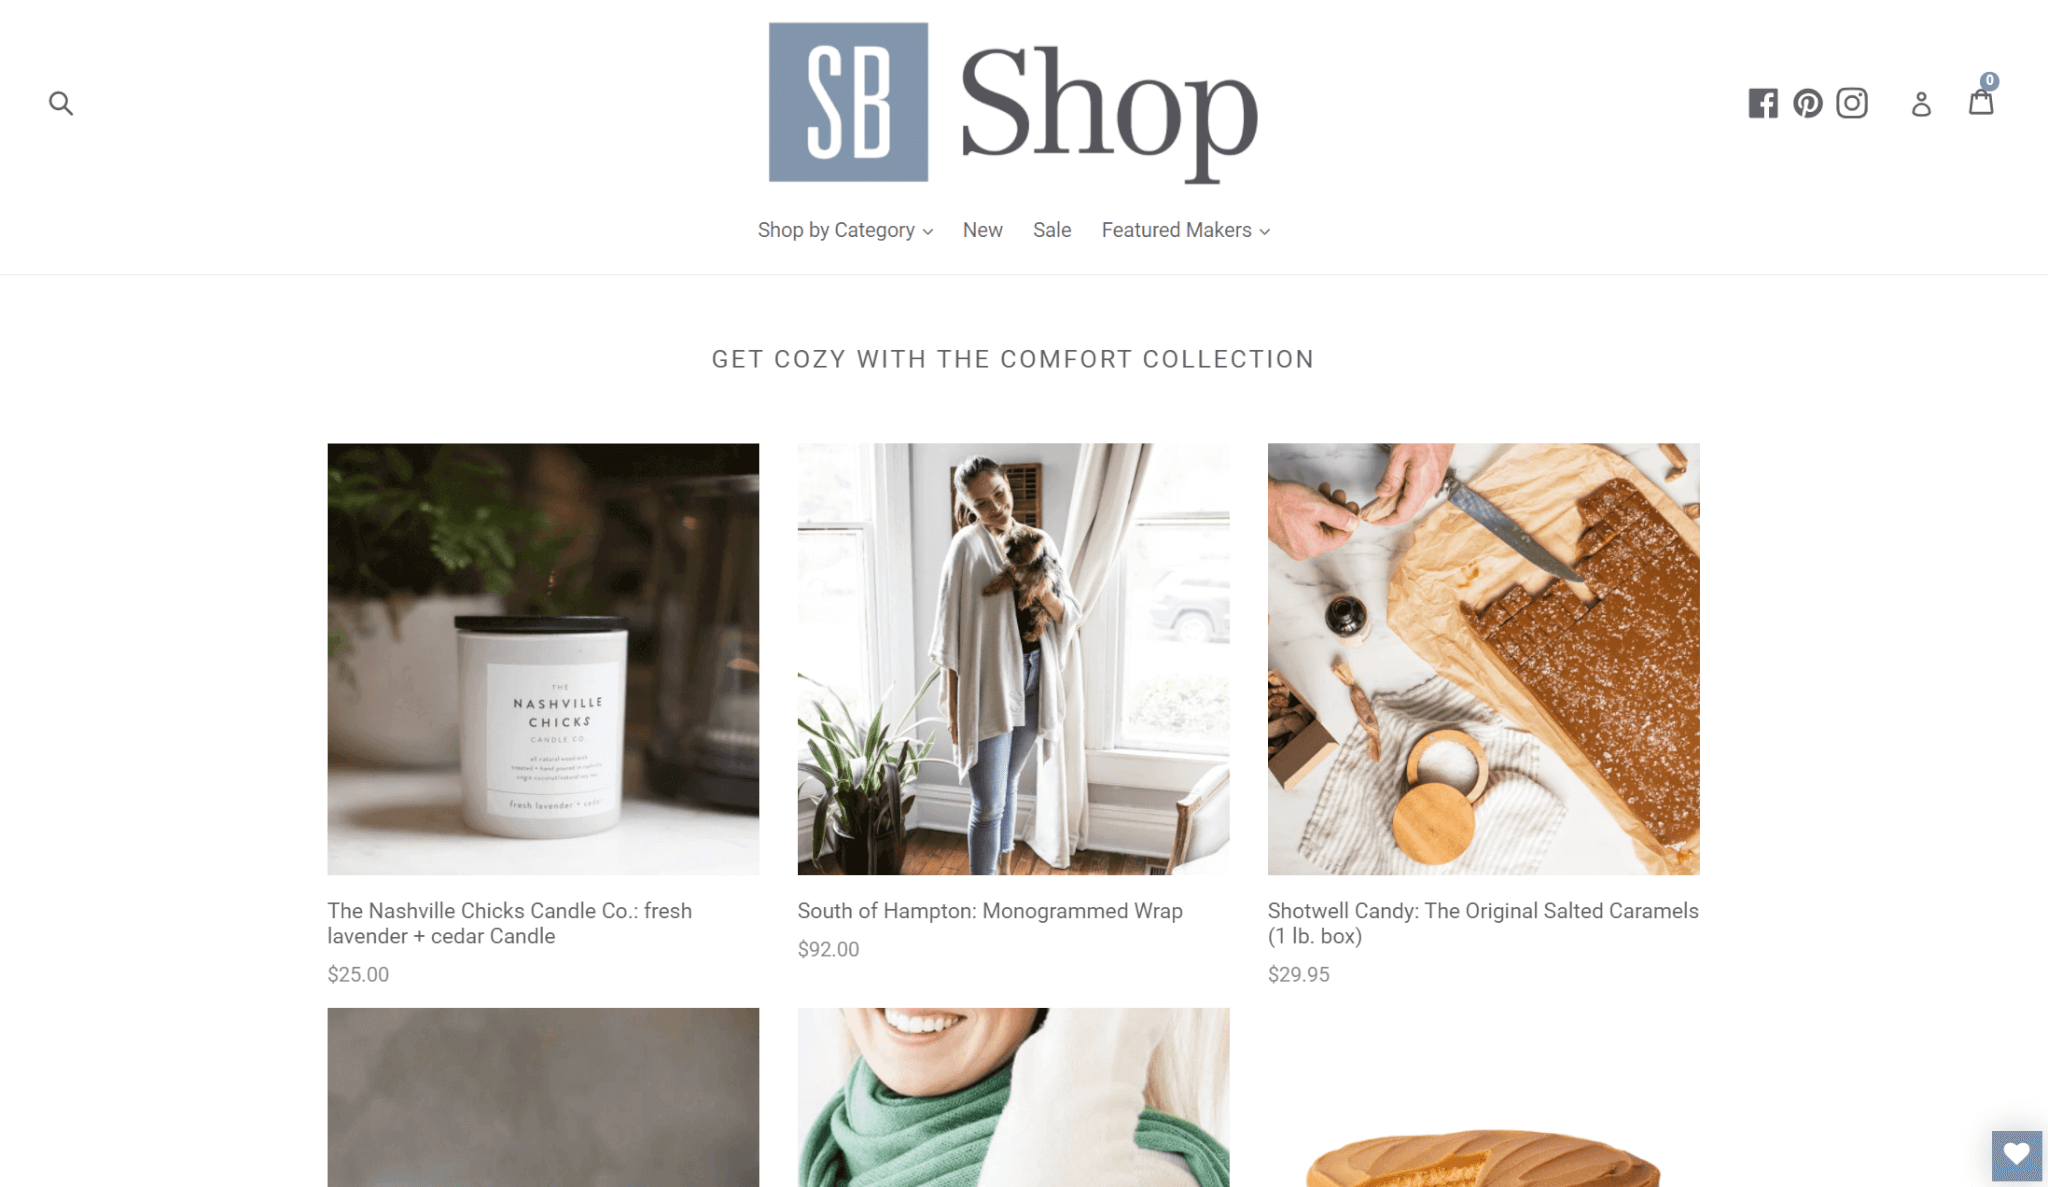 SB Shop